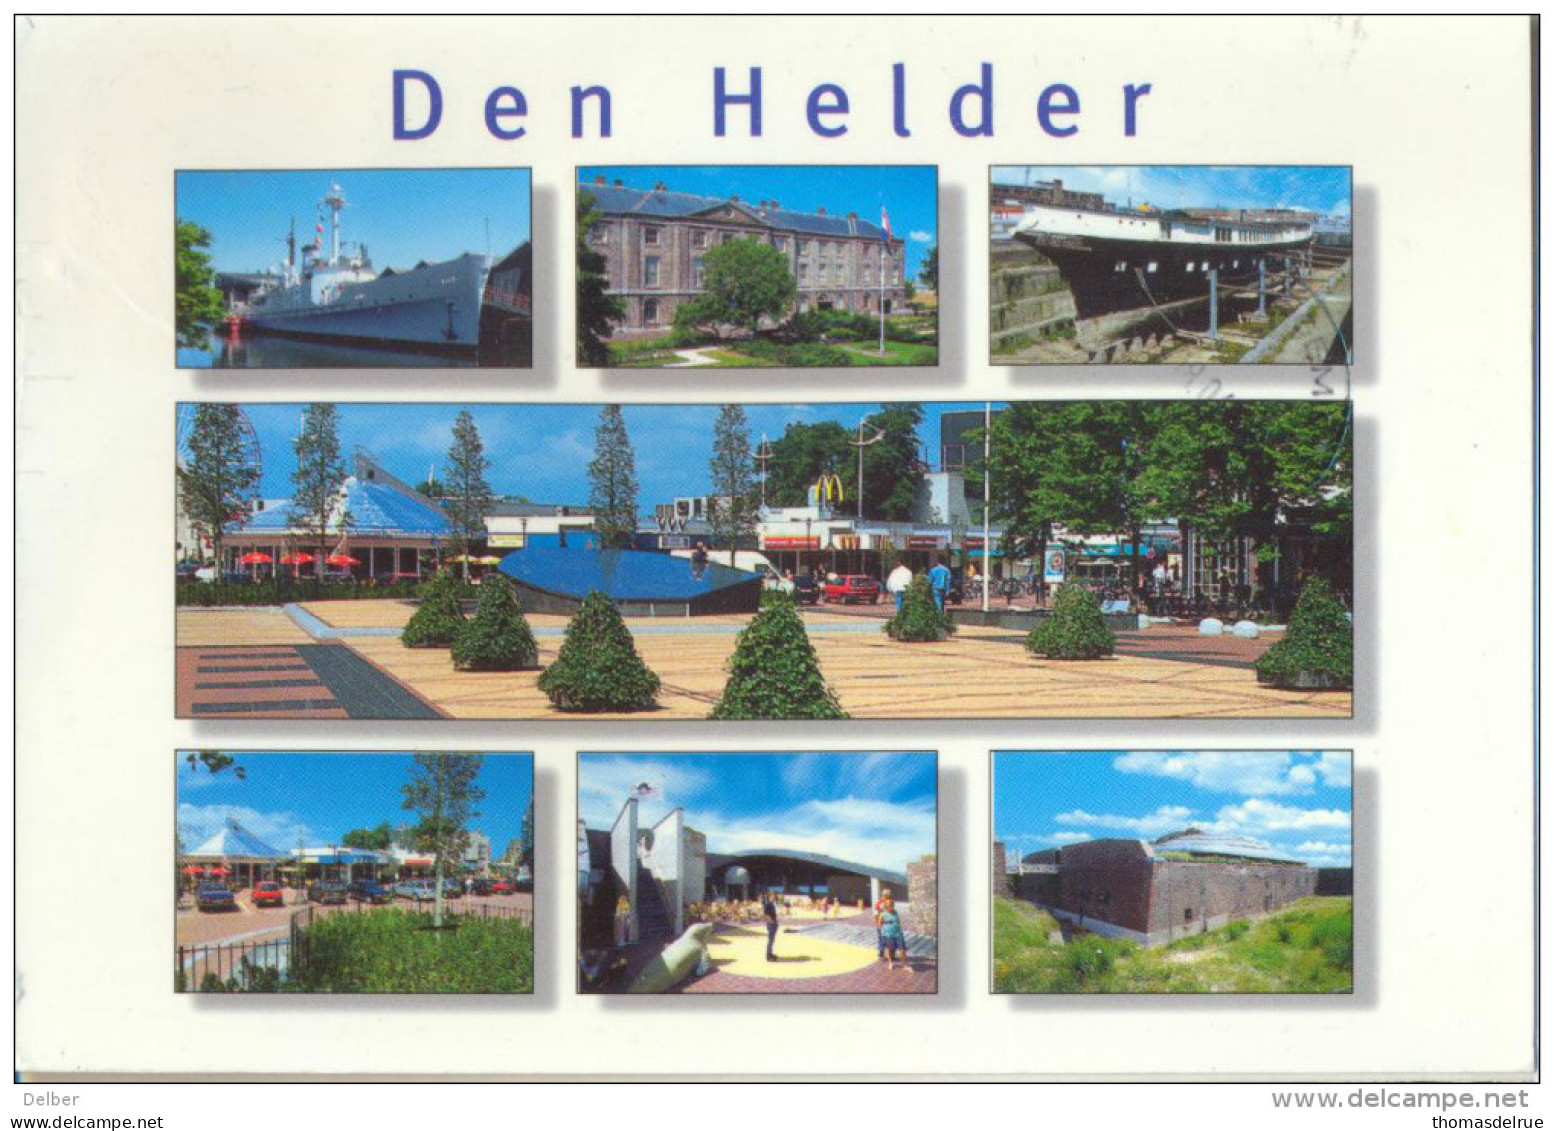 4cp032: DEN HELDER ... Diverse Foto's... Iets Beschadigd.. Verstuurd > Aalter -Bellem OV-BE - Den Helder